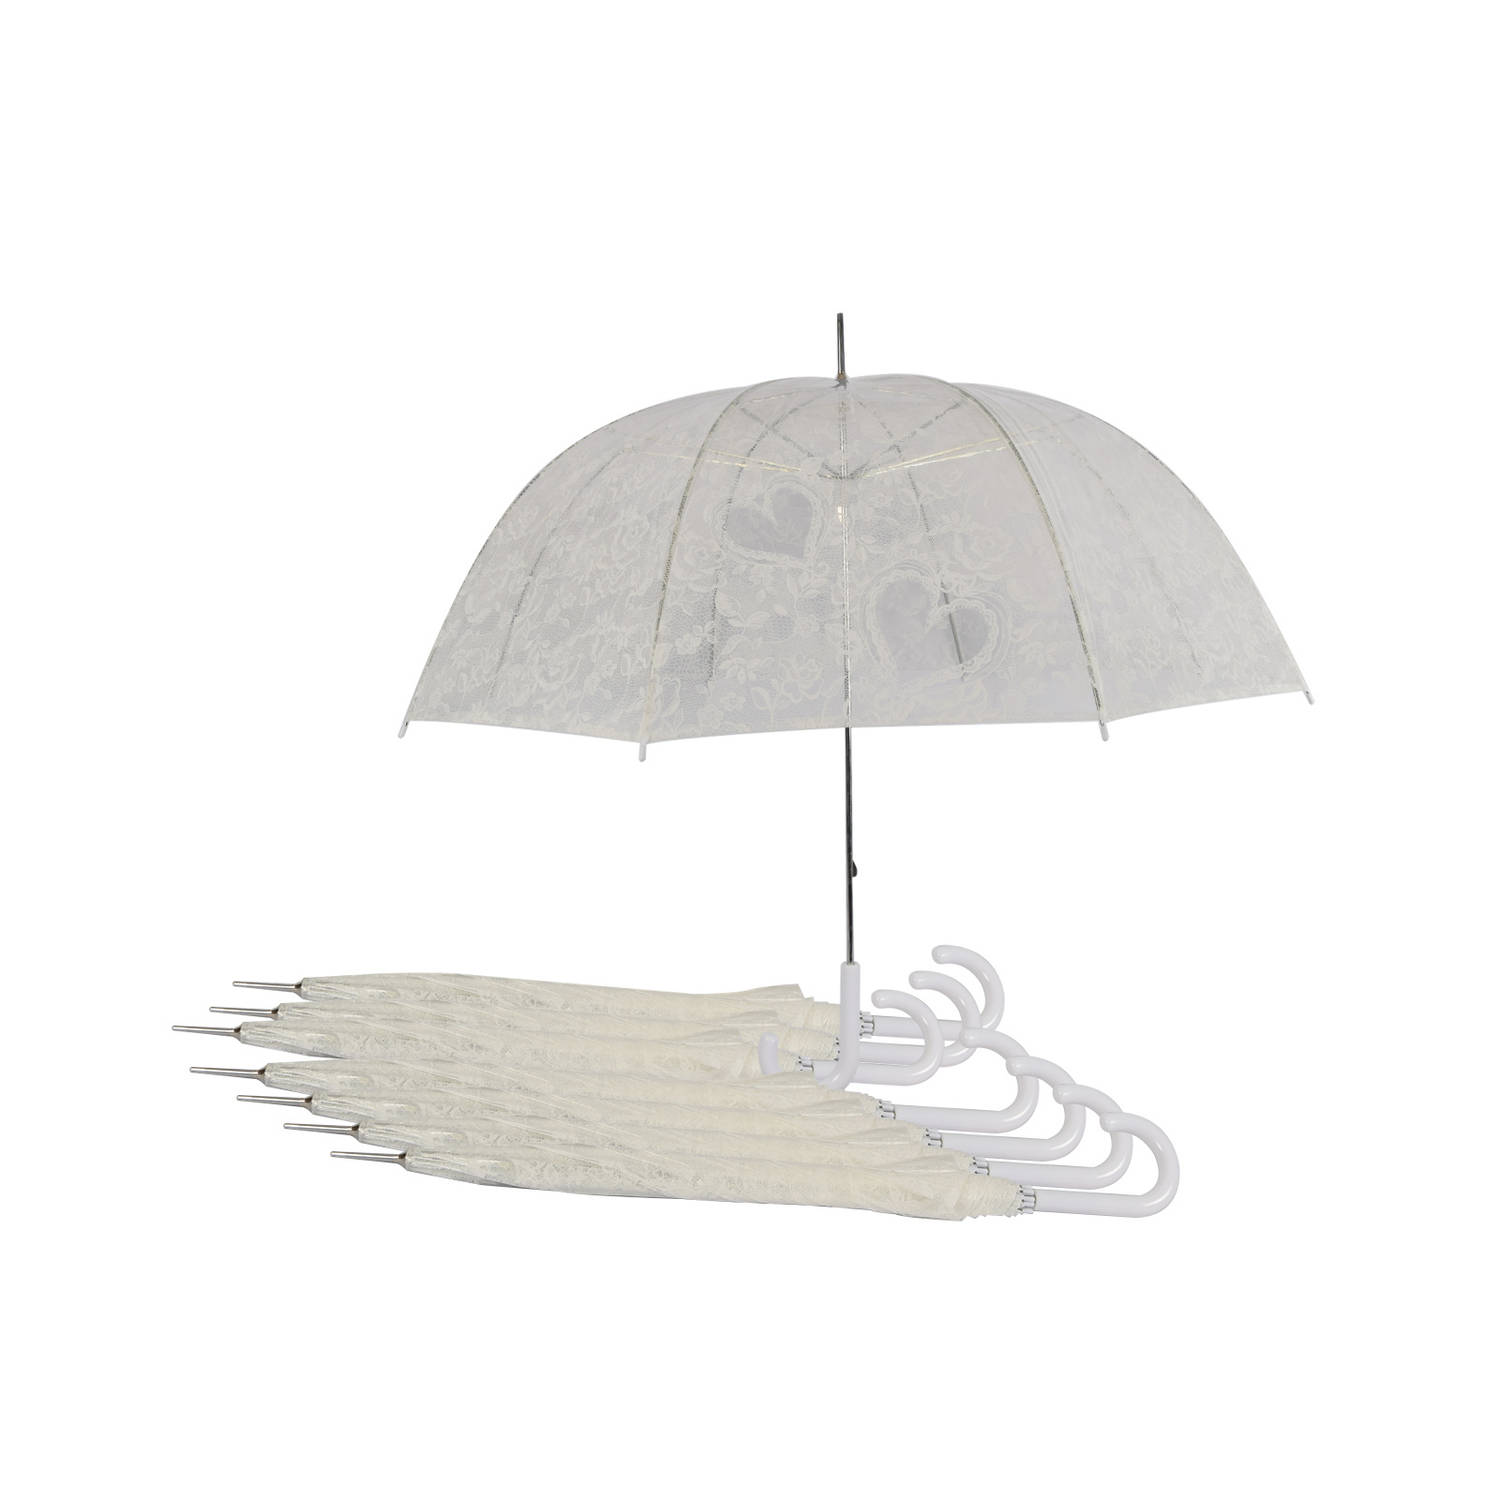 Set van 8 Romantische Doorzichtige Trouwparaplu's - Transparante Paraplu met Hartjes - Perfect voor Bruiloften | Windproof | 98cm Diameter